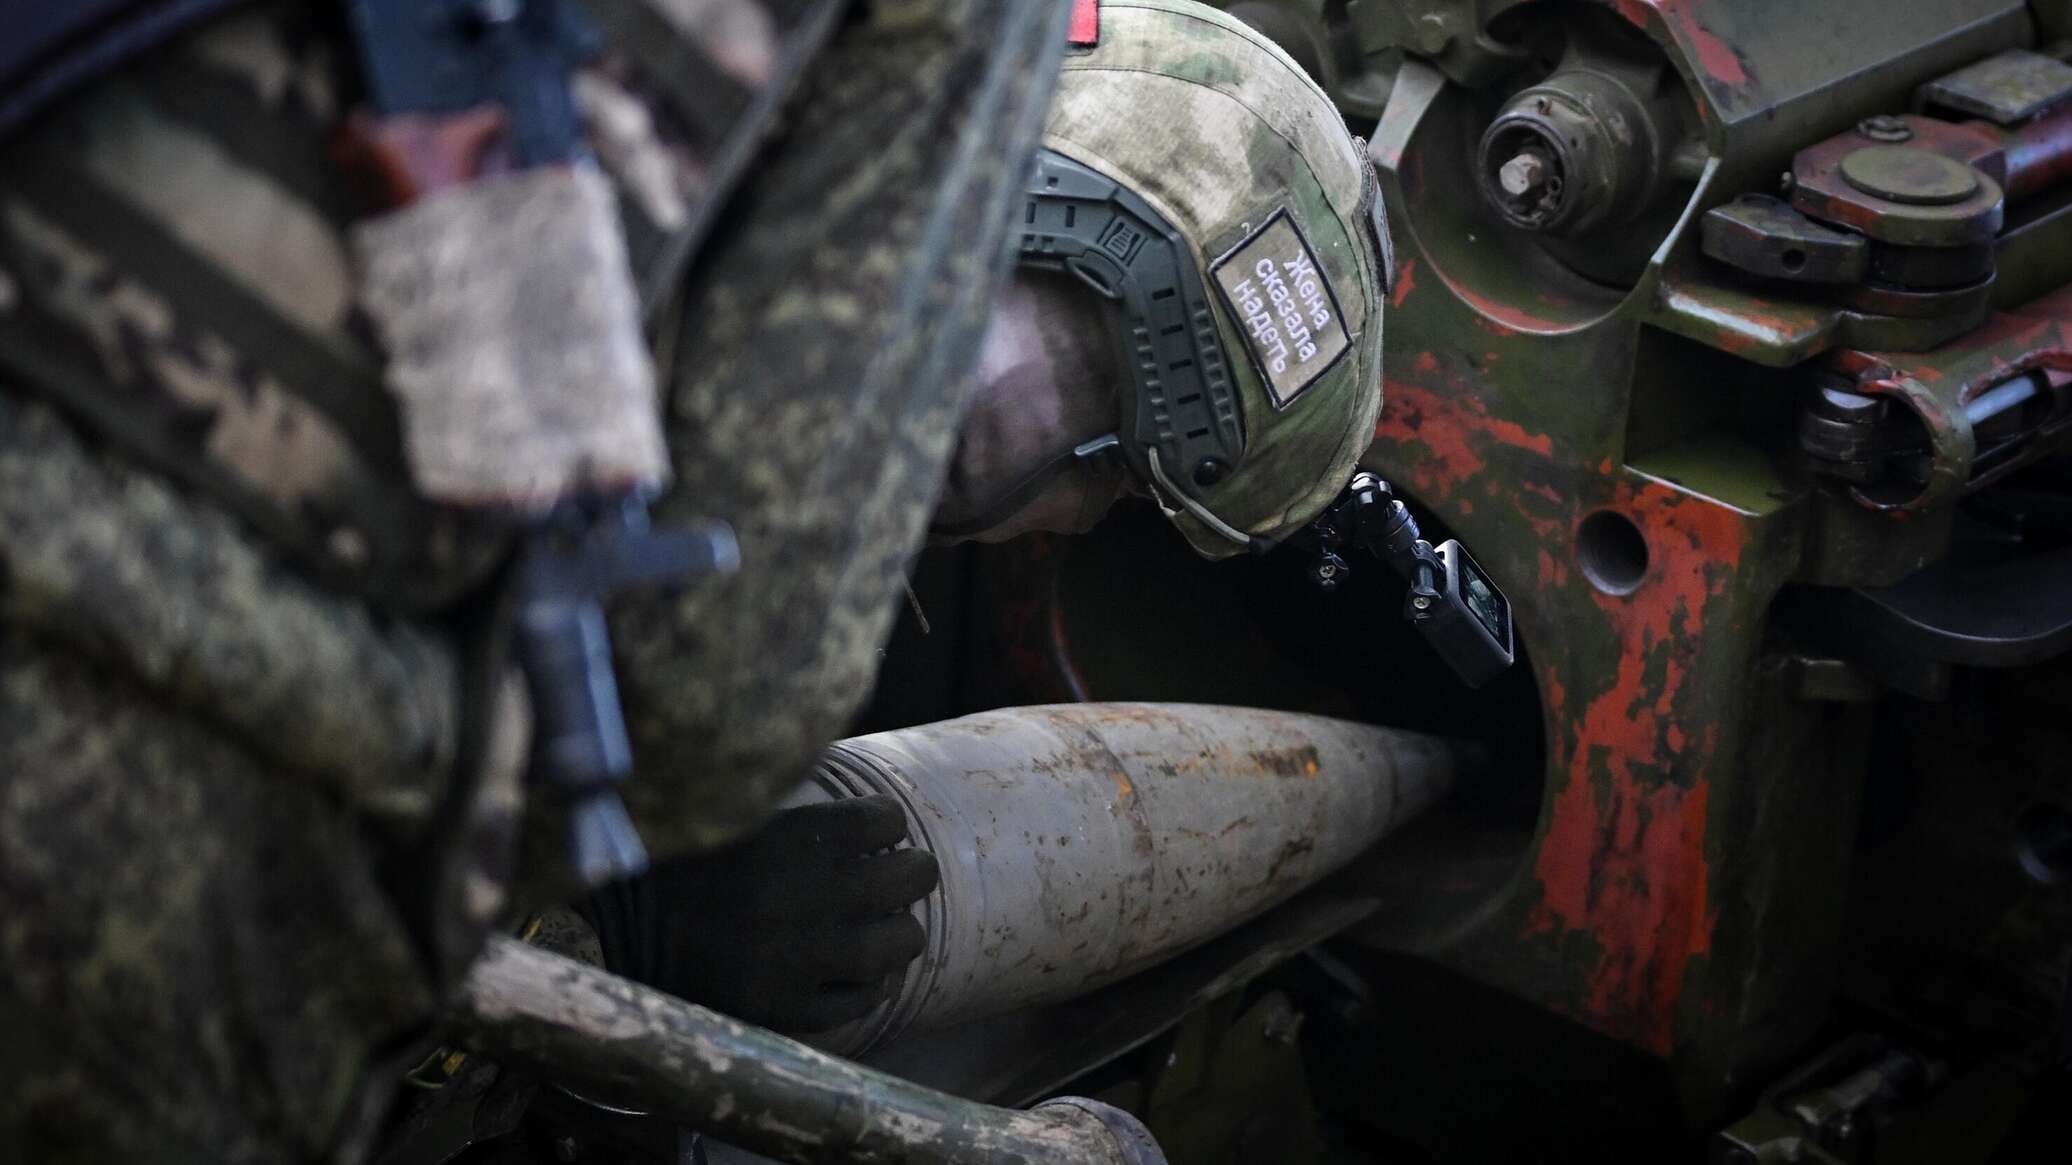 وقوع 5 عسكريين أوكرانيين بالأسر على يد جنديين روسيين... فيديو